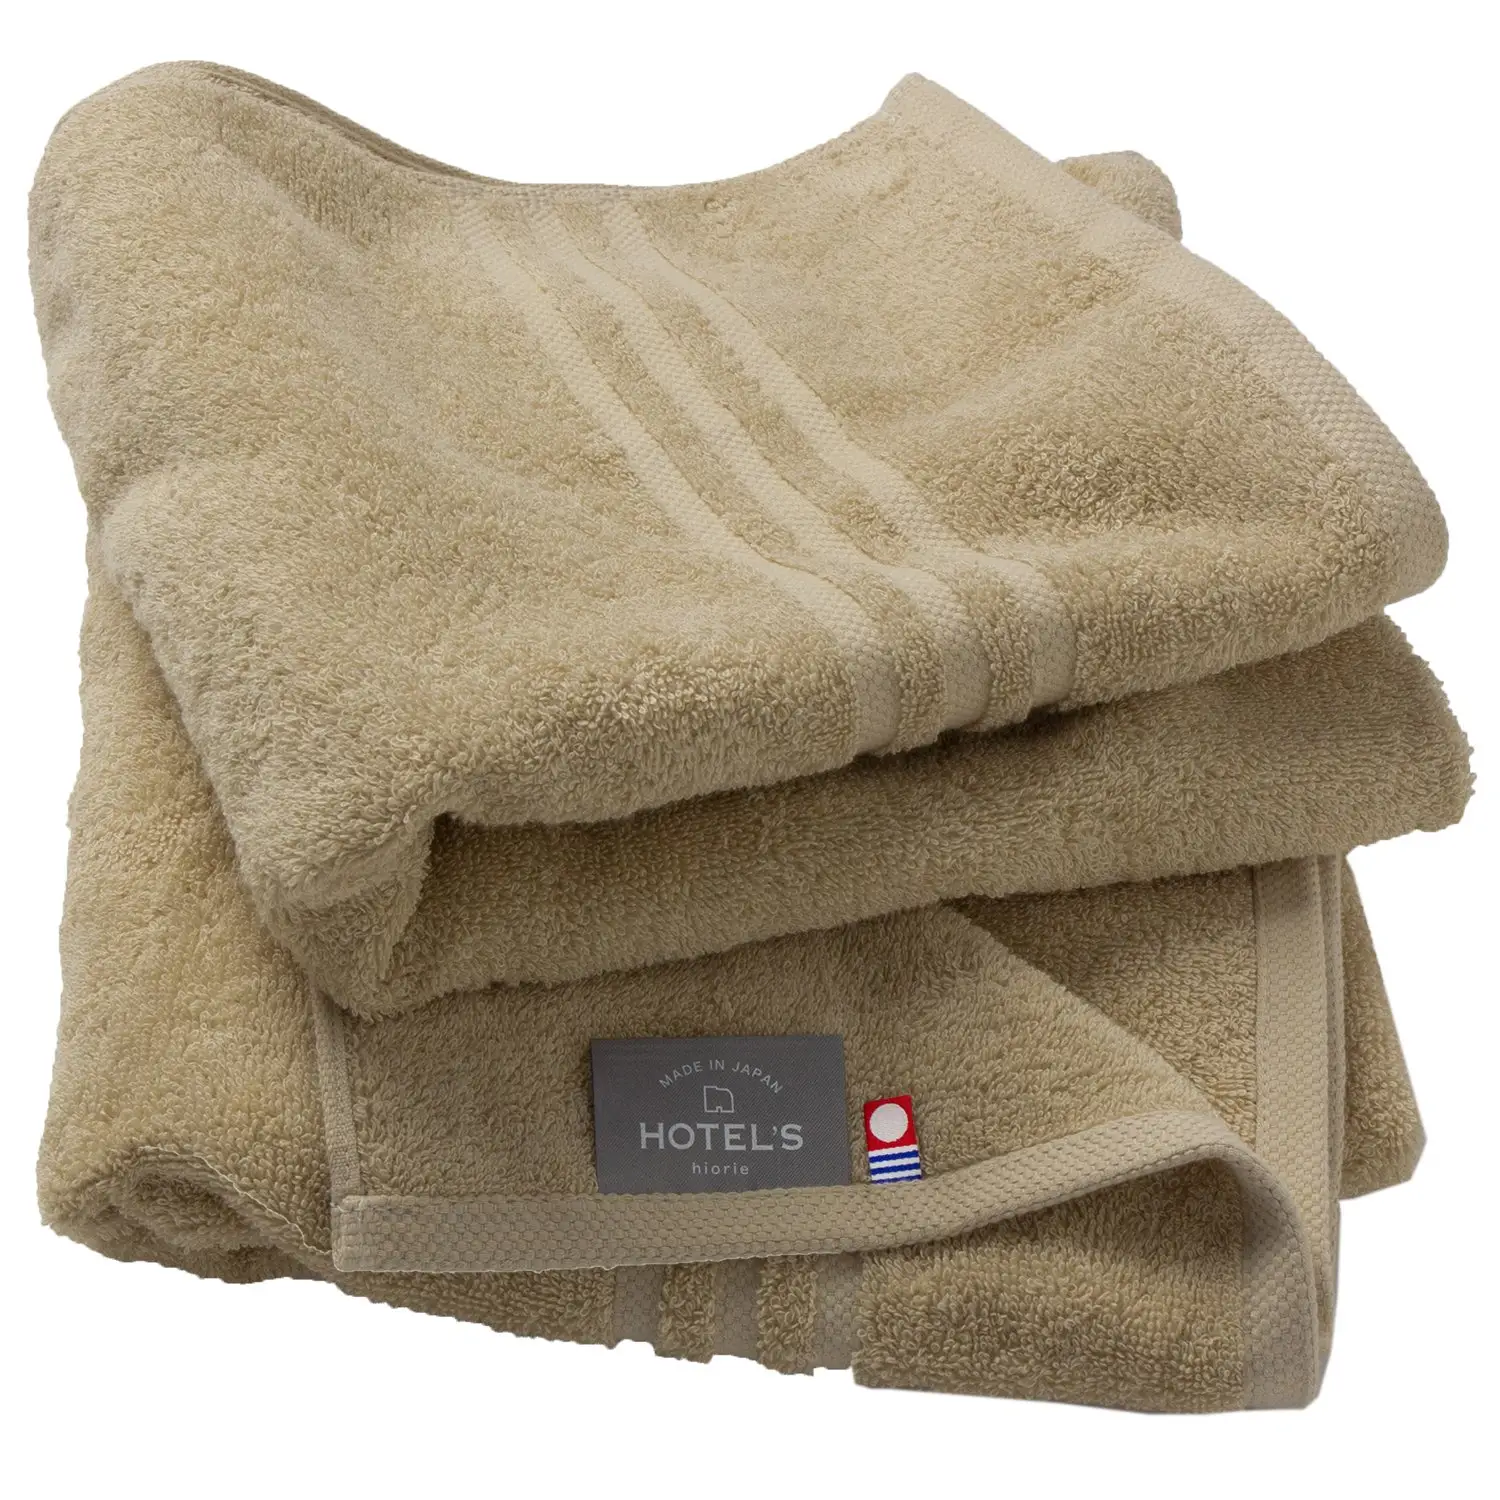 Hiorie imabari toalha de banho de algodão, toalha pequena do banho de 100% de algodão, 45*100cm 400gsm, baixo design de luxo bege